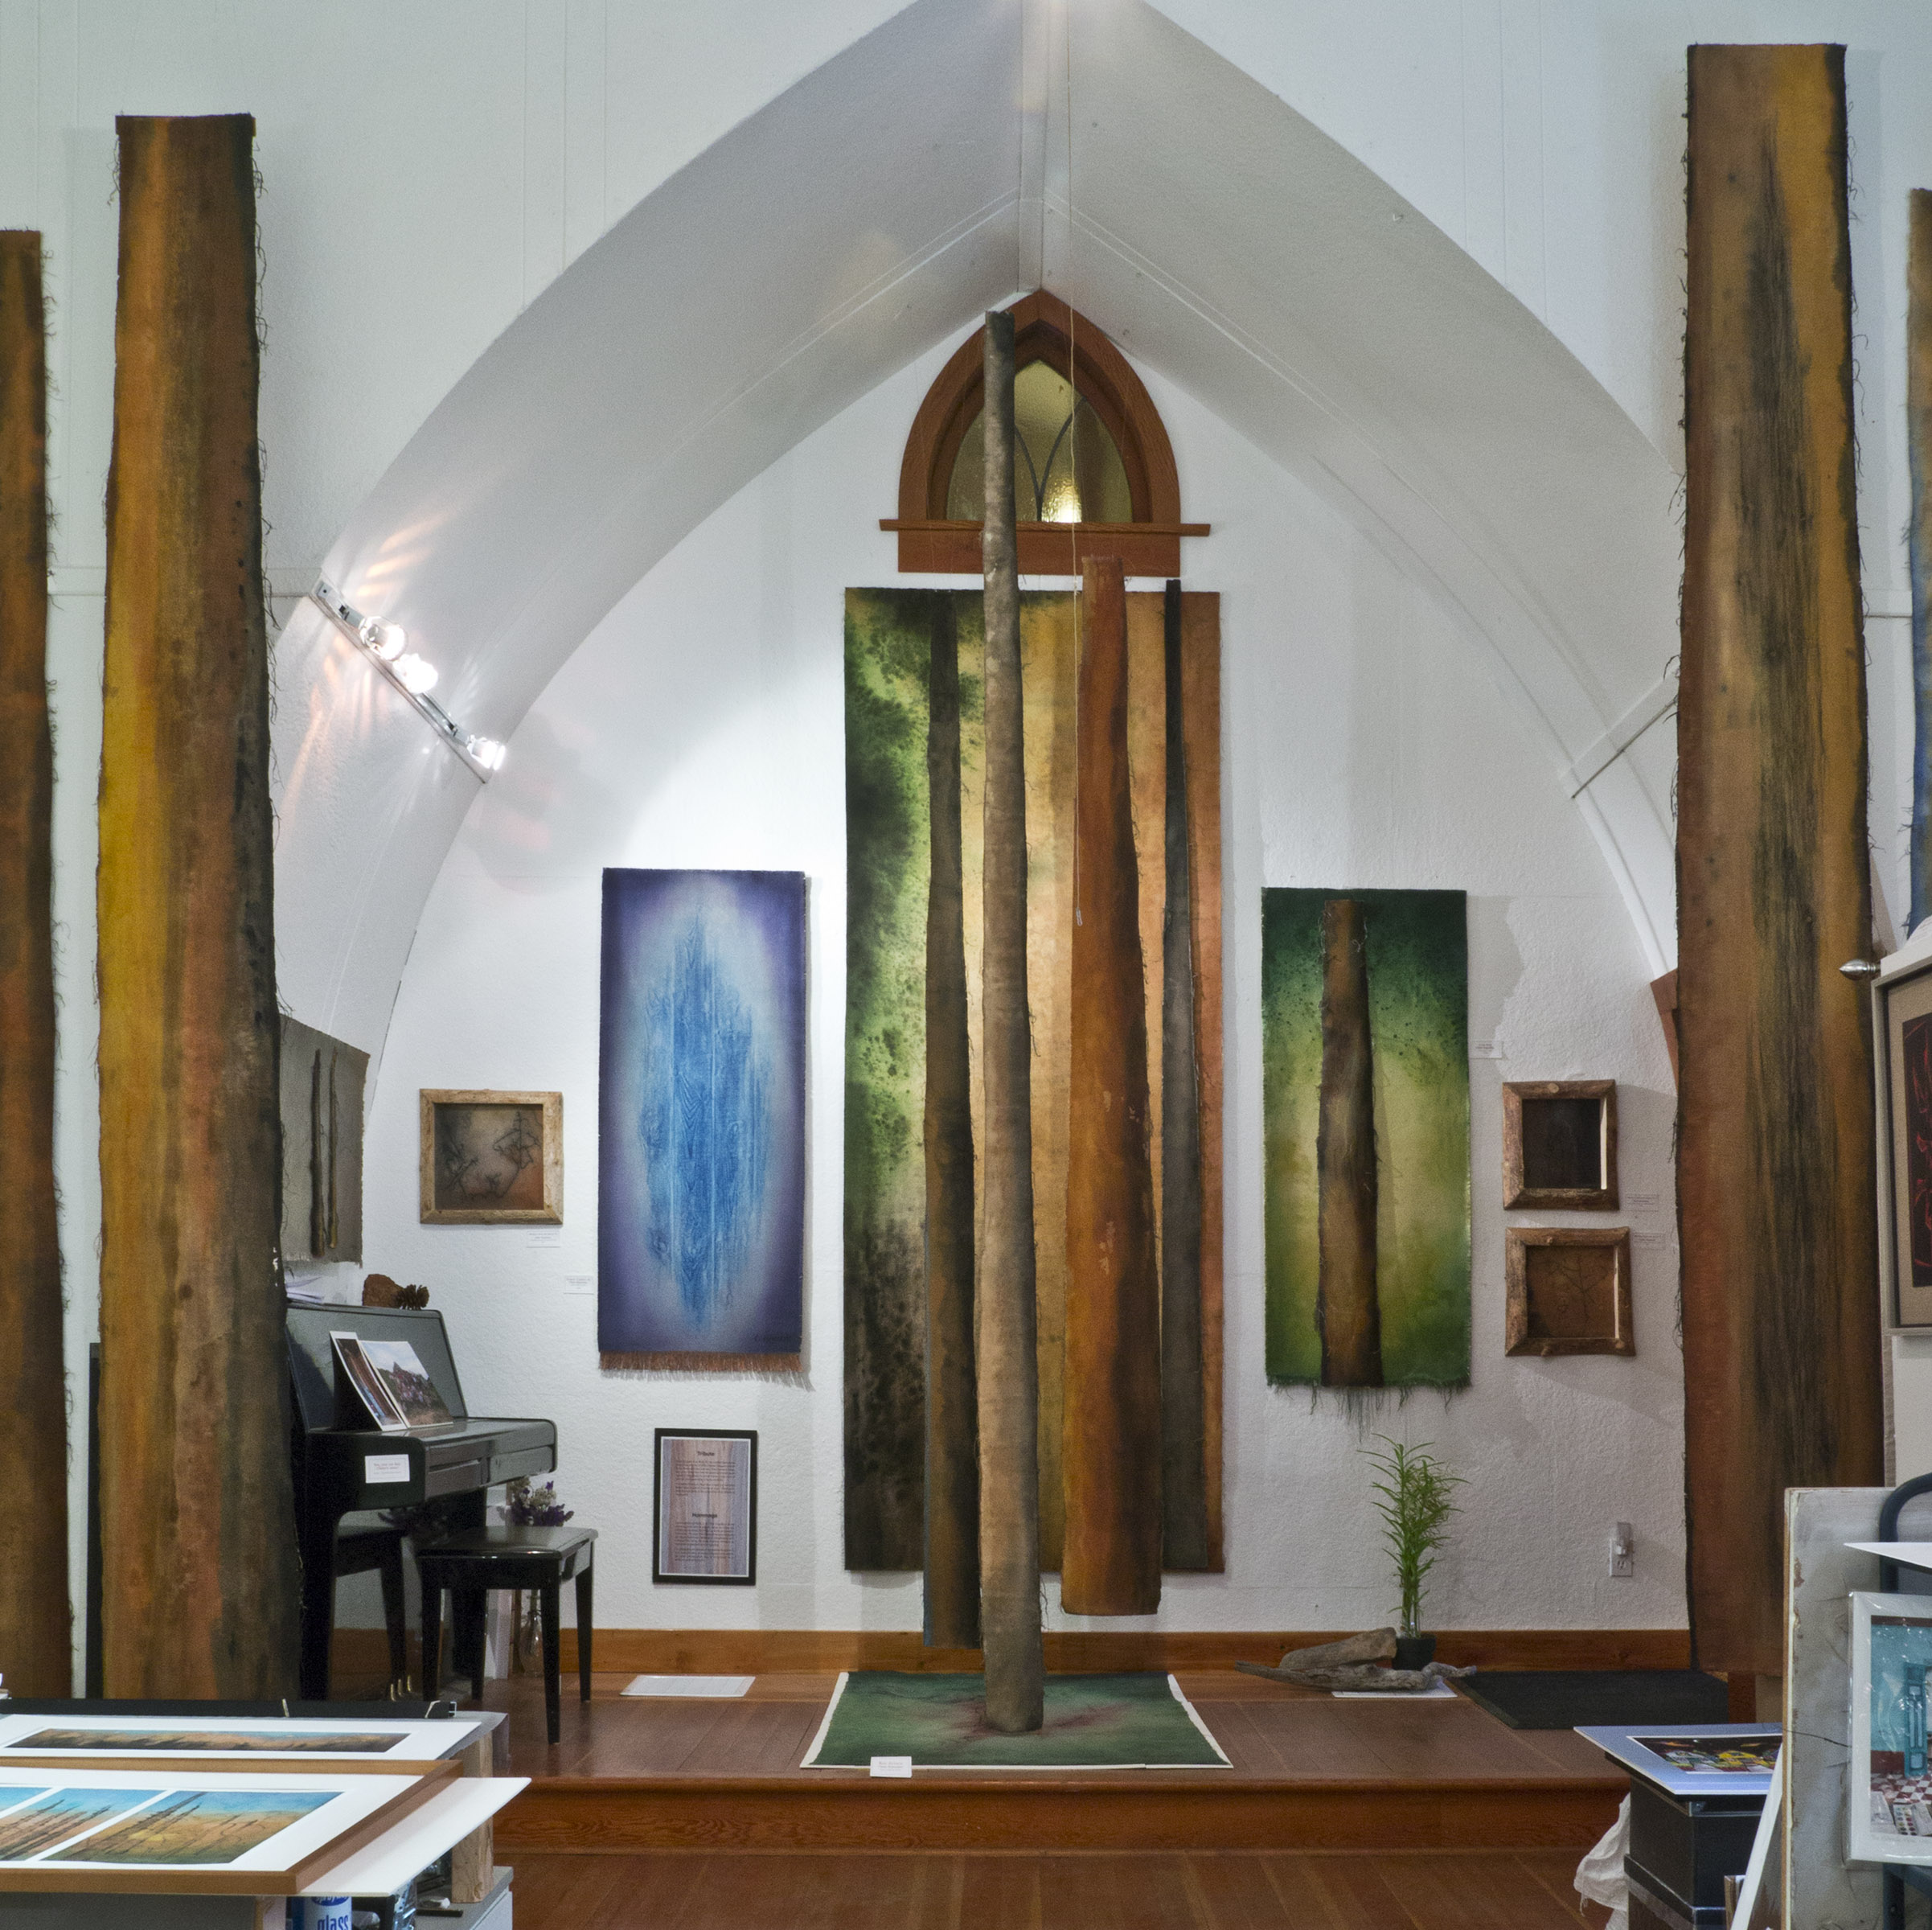 Church-Meets-Art Studio: Wells, BC